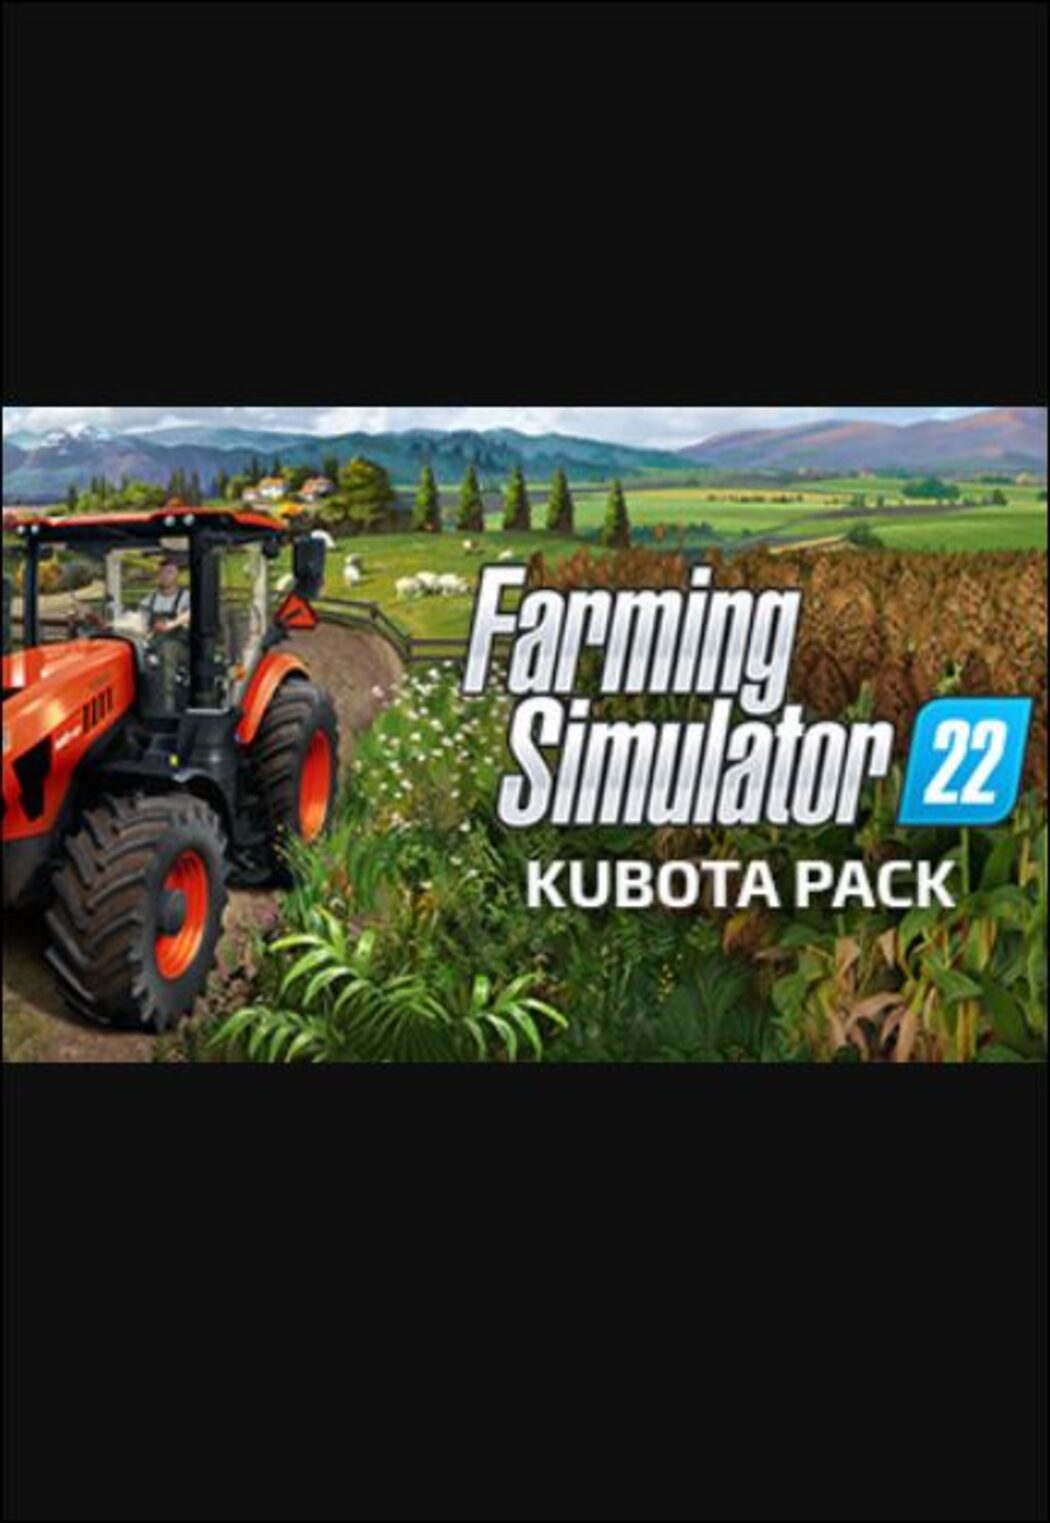 Kubota to join Farming Simulator 22